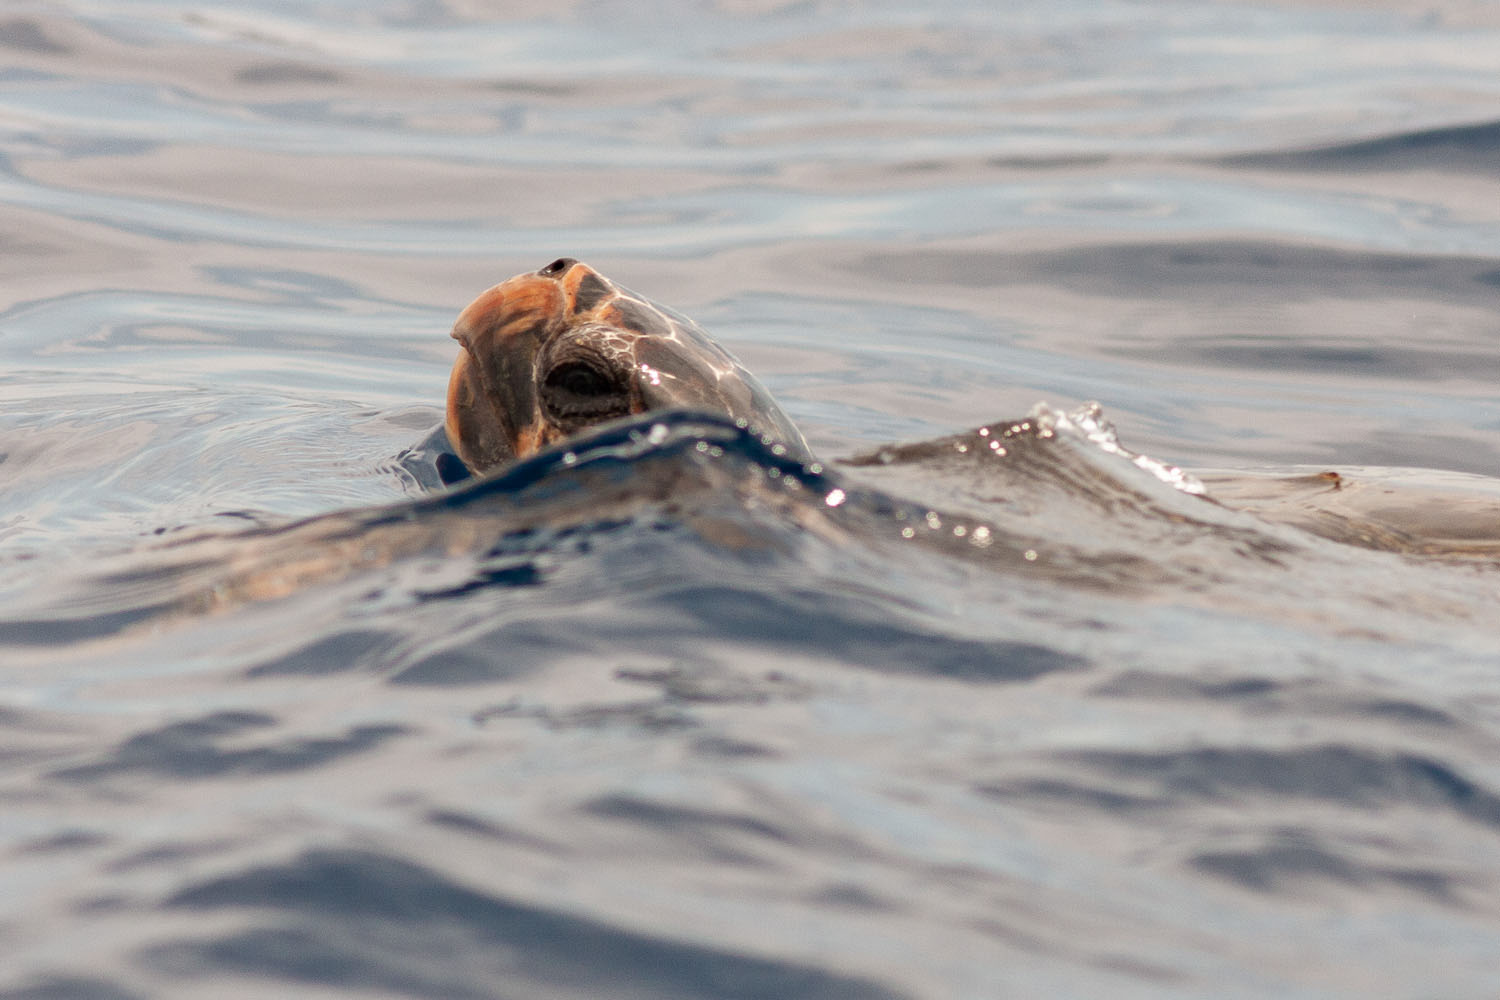 voyage scientifique - cetaces de mediterranee vers la corse a la voile 21